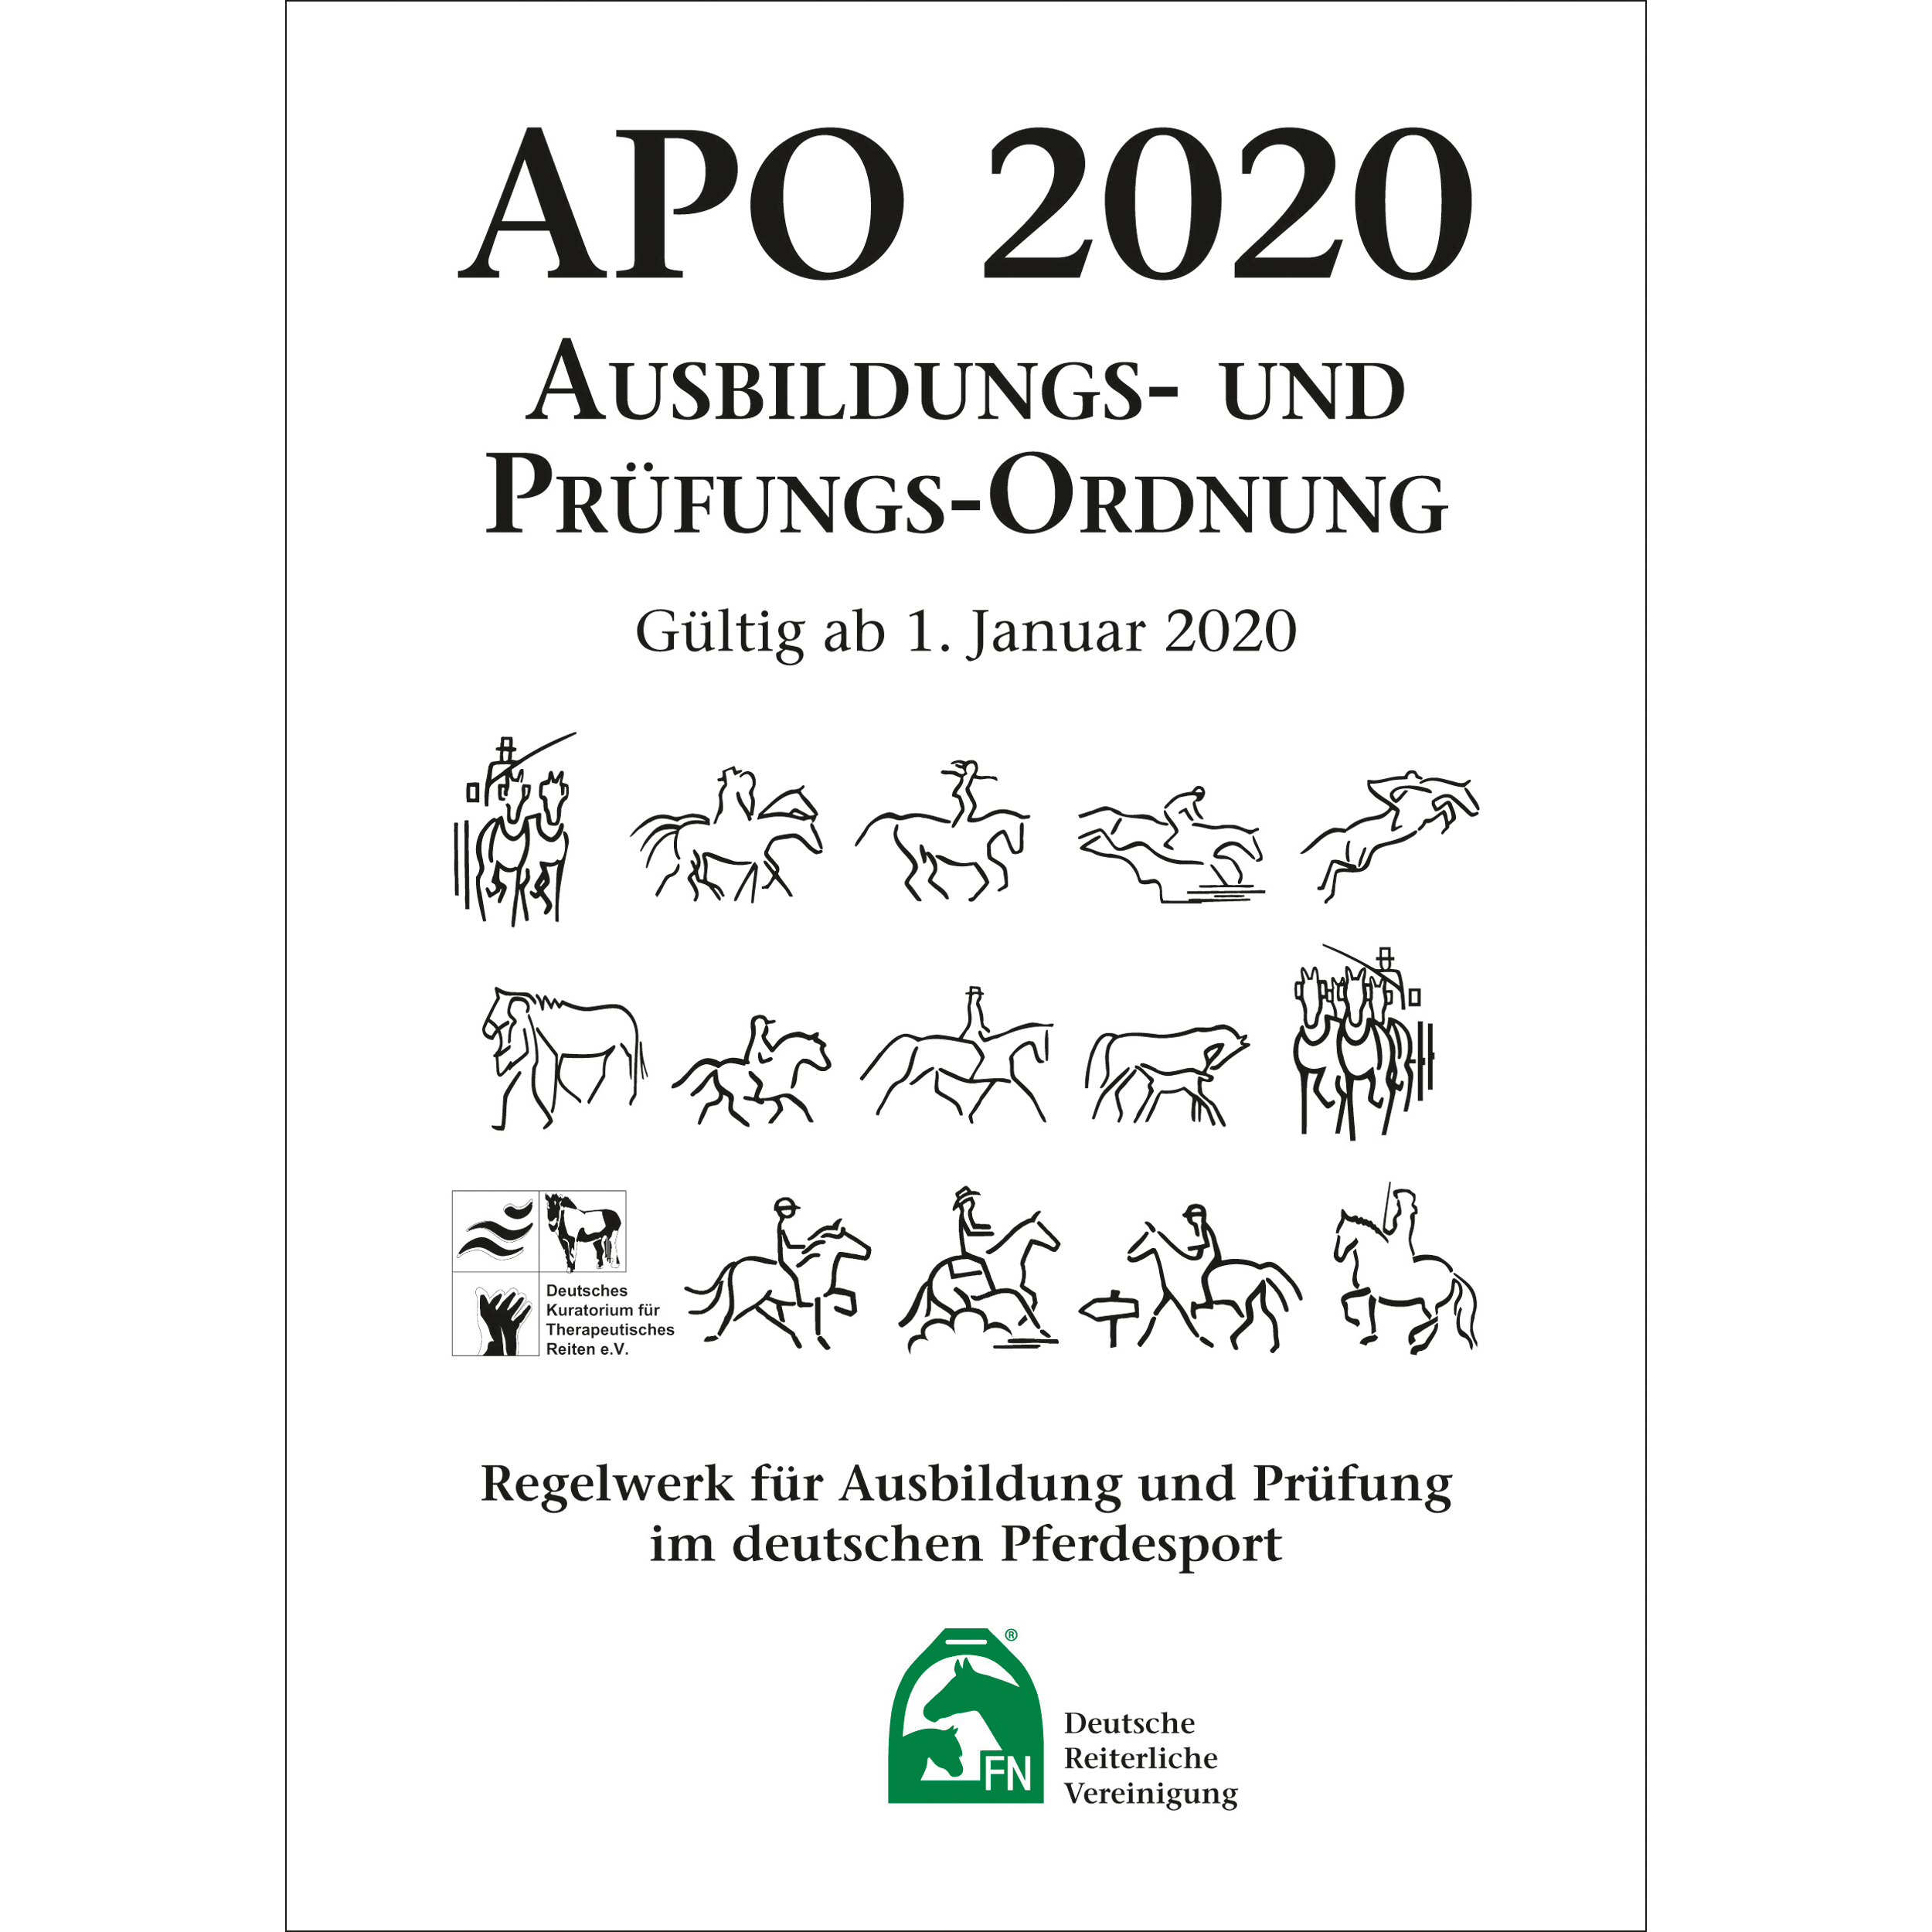 Ausbildungs- und Prüfungs-Ordnung (APO) 2020  – Inhalt